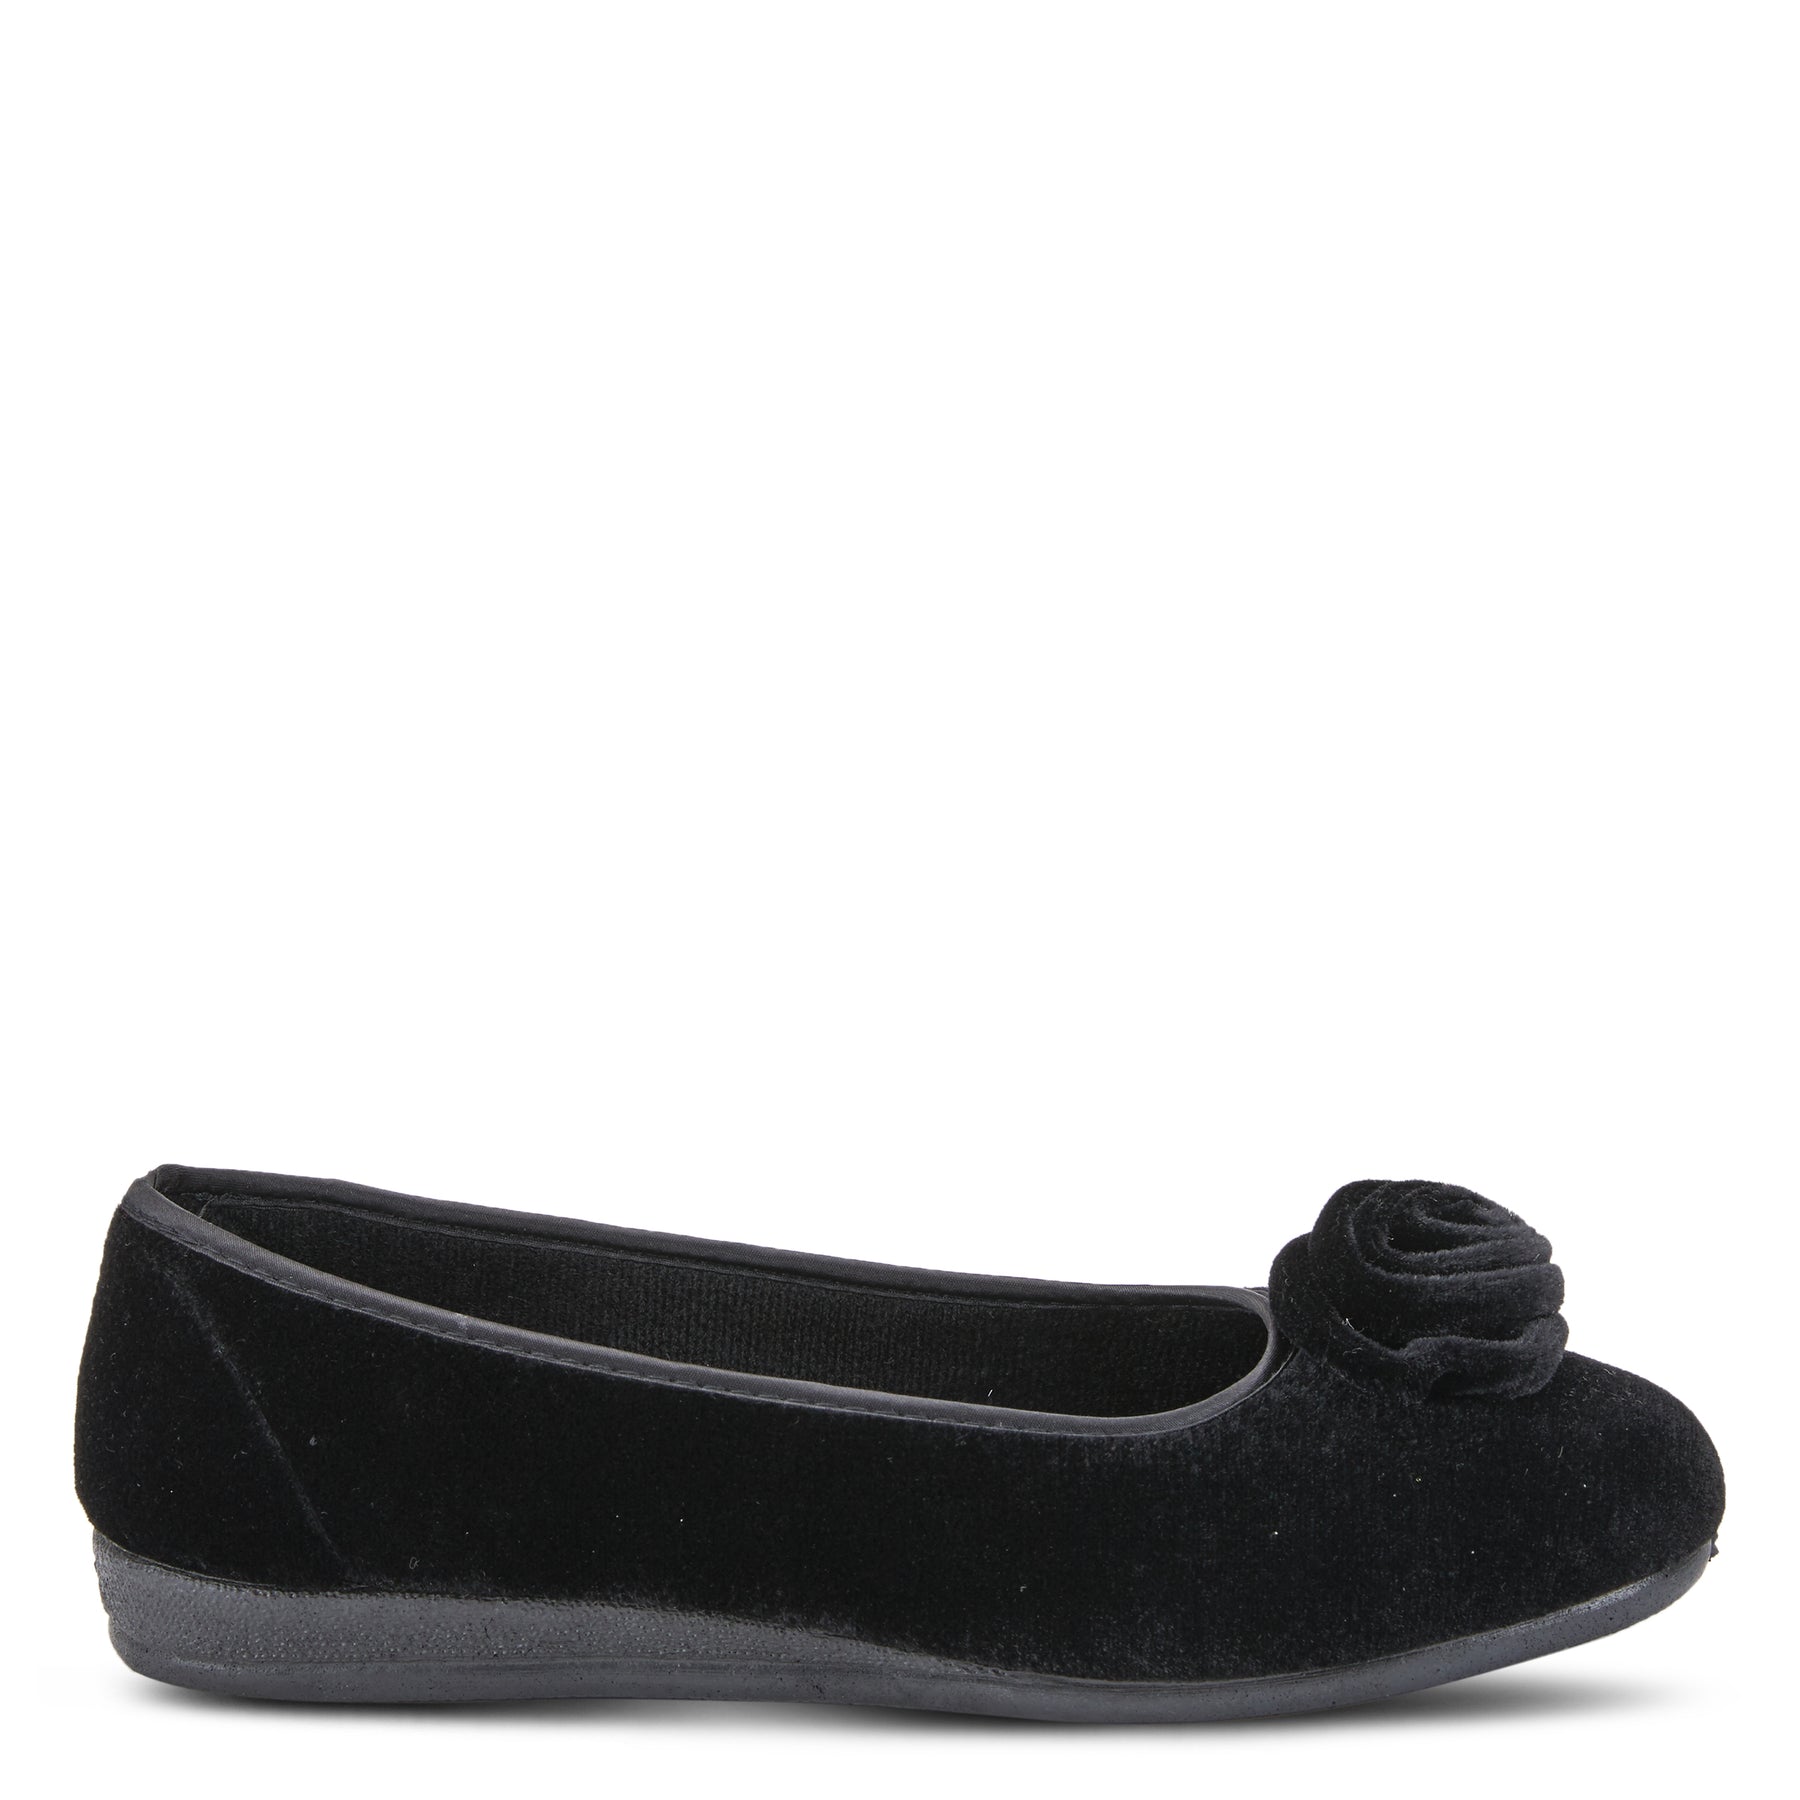 Flexus Roseloud Slippers: Ballerina Slipper – Spring Step Shoes